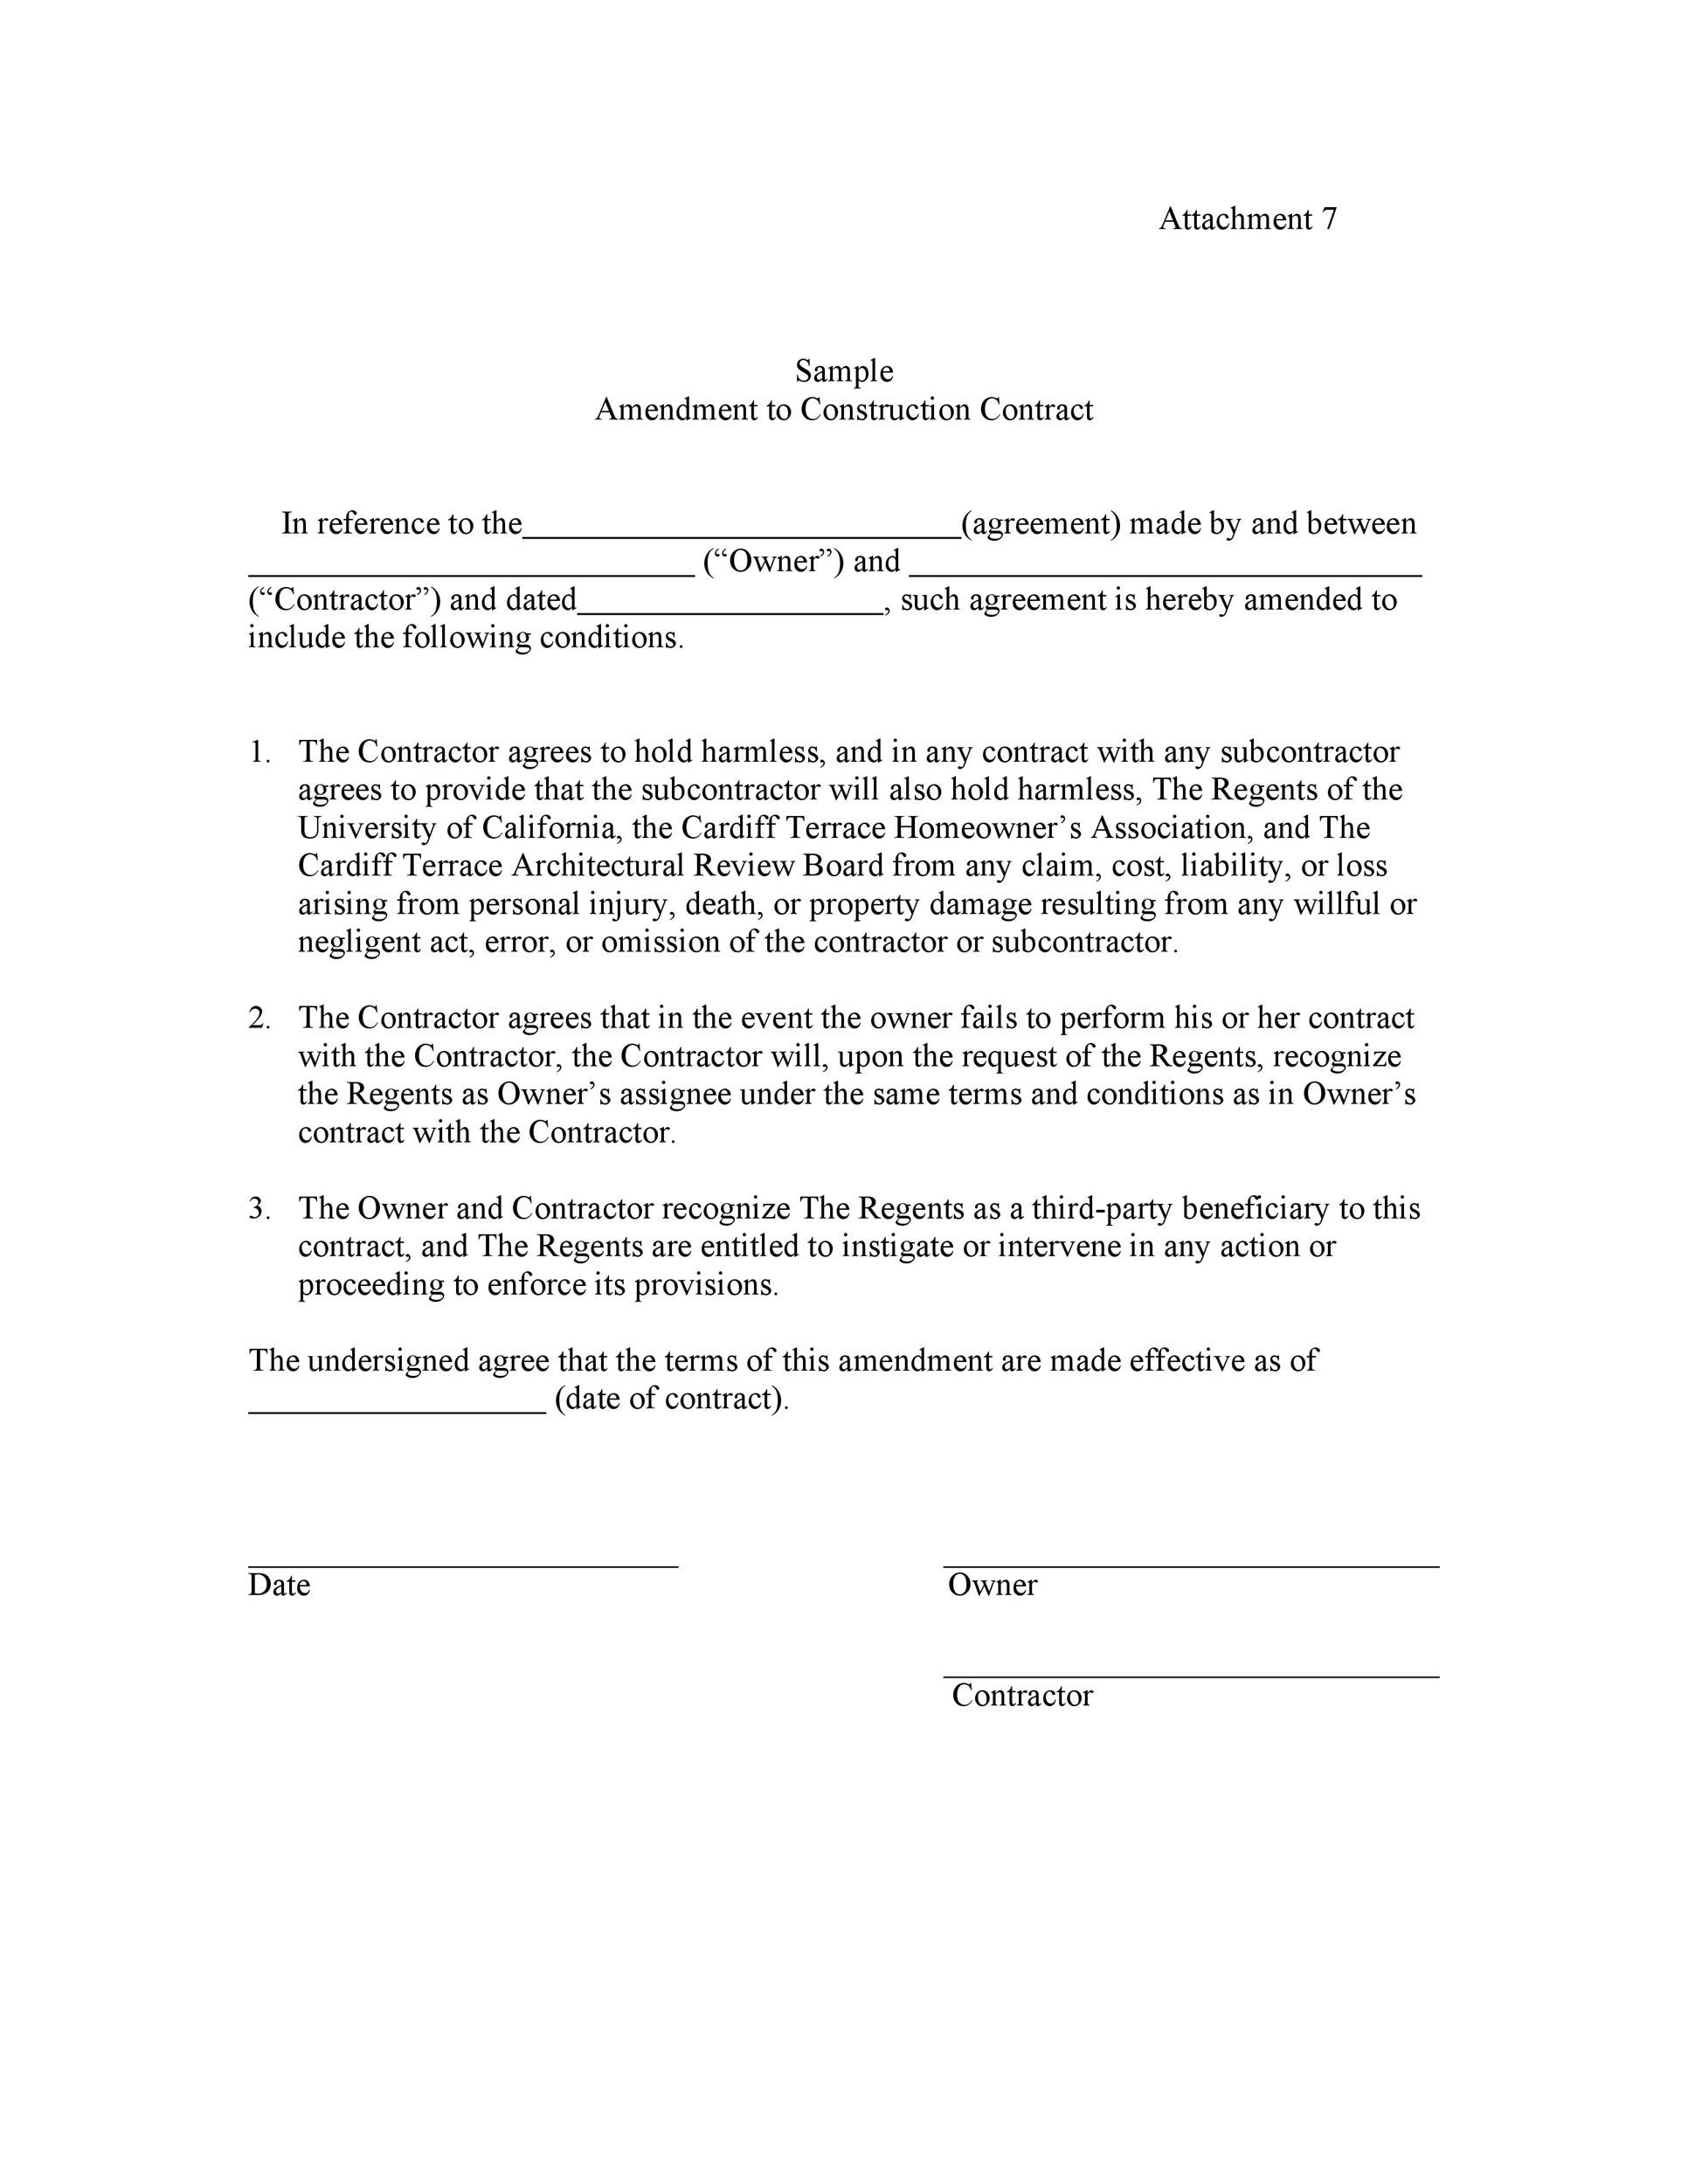 12 Professional Contract Amendment Templates & Samples ᐅ TemplateLab